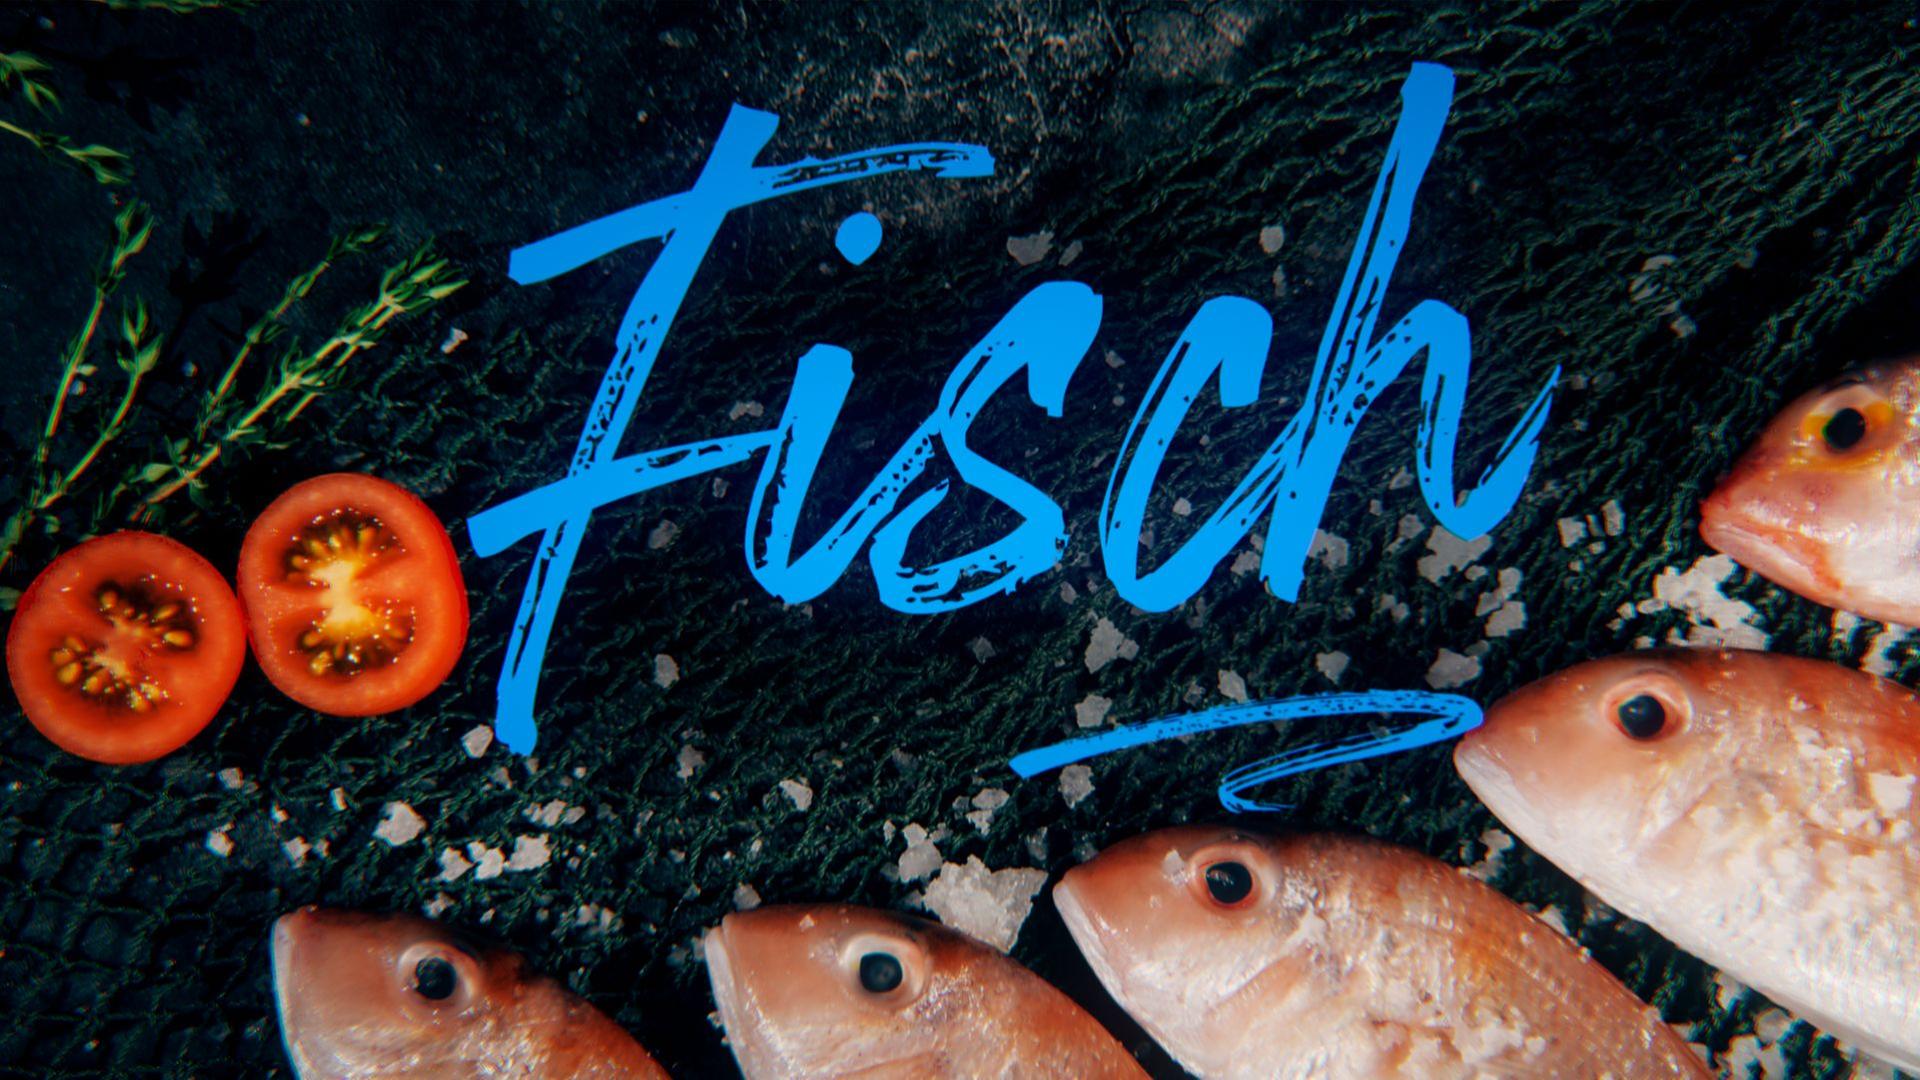 Köpfe von frischem Fangfisch neben frischen Tomaten in Scheiben und mit grobem Salz bestreut sowie Titelgrafik "Fisch"